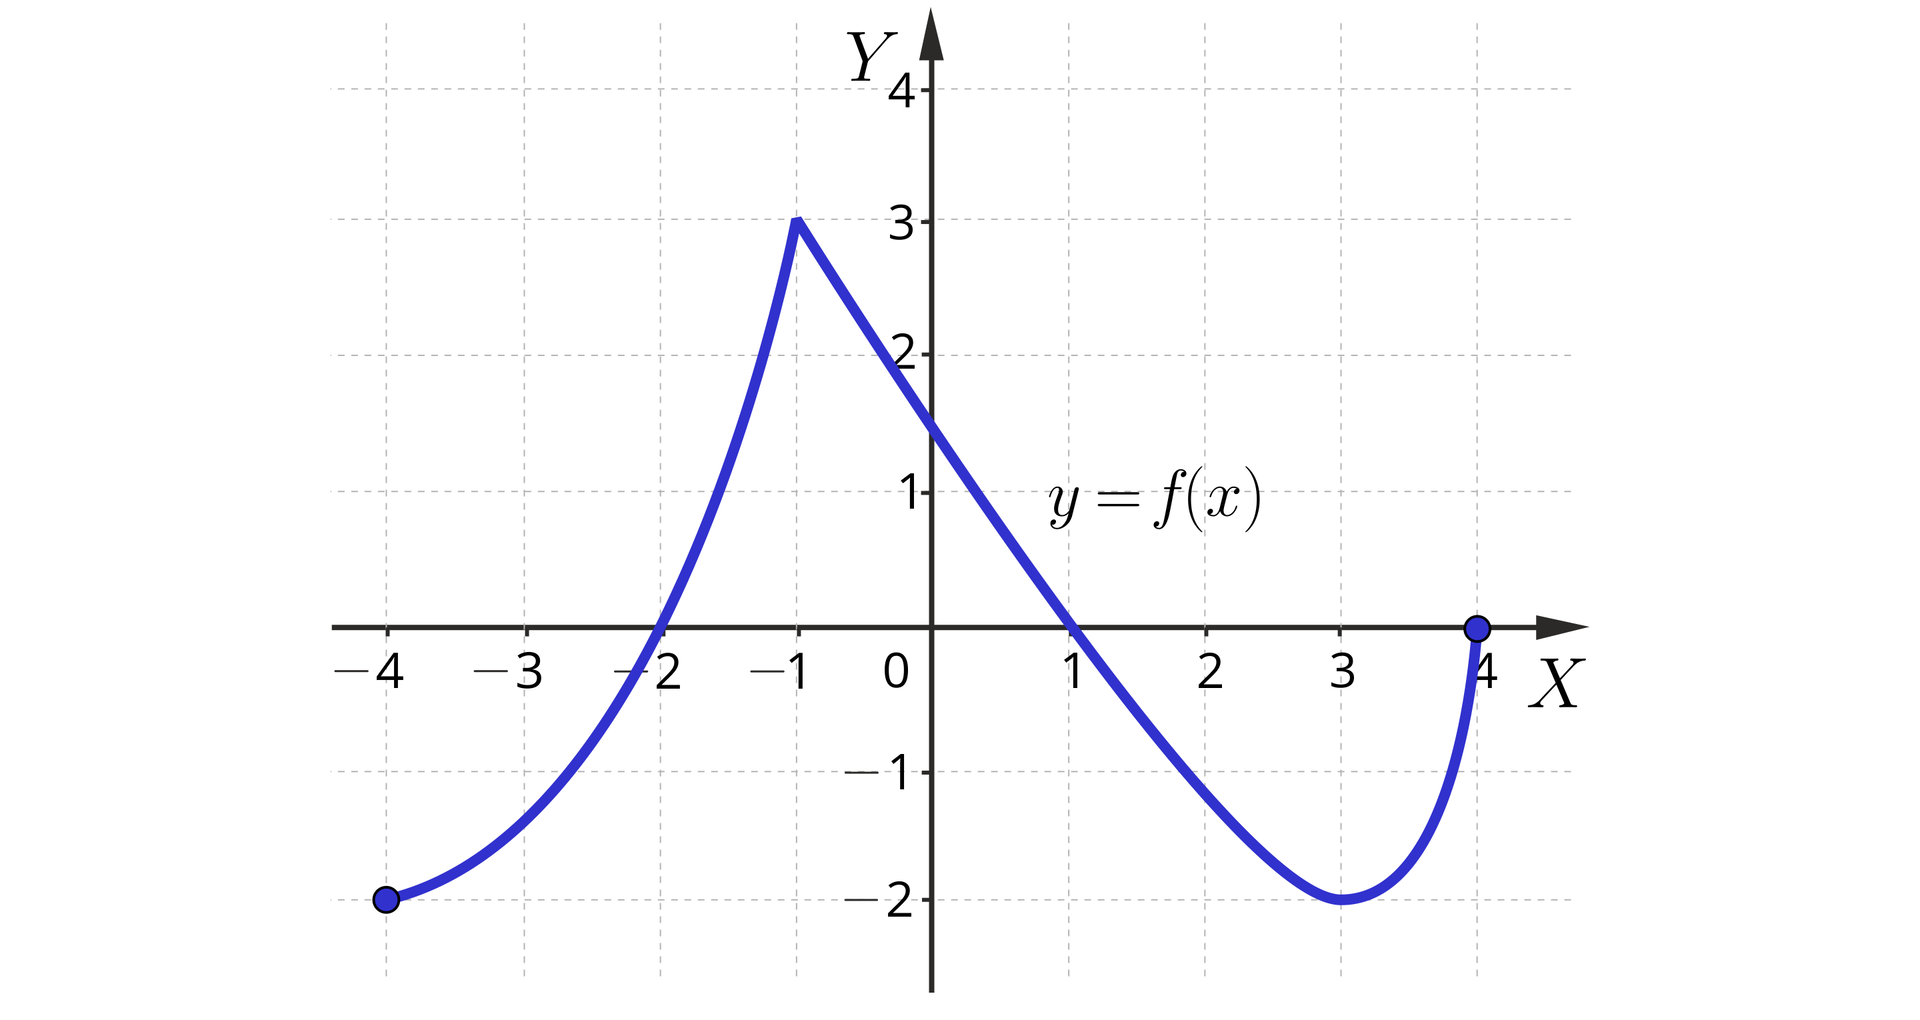 Ilustracja przedstawia układ współrzędnych z poziomą osią X od minus czterech do czterech oraz z pionową osią Y od minus dwóch do czterech. Na płaszczyźnie narysowano wykres funkcji f składający się z dwóch łuków. Od lewej mamy łuk wybrzuszony w dolnym prawym kierunku o lewym zamalowanym końcu o współrzędnych minus 4, minus dwa. Łuk biegnie w prawo w górę, przecina oś X w punkcie x równa się minus 2, a następnie biegnie do prawego końca o współrzędnych minus 1, trzy. Z tego punktu biegnie drugi łuk wybrzuszony w dół. Łuk ten najpier biegnie ukośnie w prawo w dół, przecinając oś Y w punkcie y równa się trzy drugie oraz przecinając oś X w punkcie x równa się jeden. Łuk biegnie dalej w ukośnie w dół do punktu krytycznego o współrzędnych 3, minus dwa, skąd odbija do góry do prawego końca o współrzędnych 4, zero.